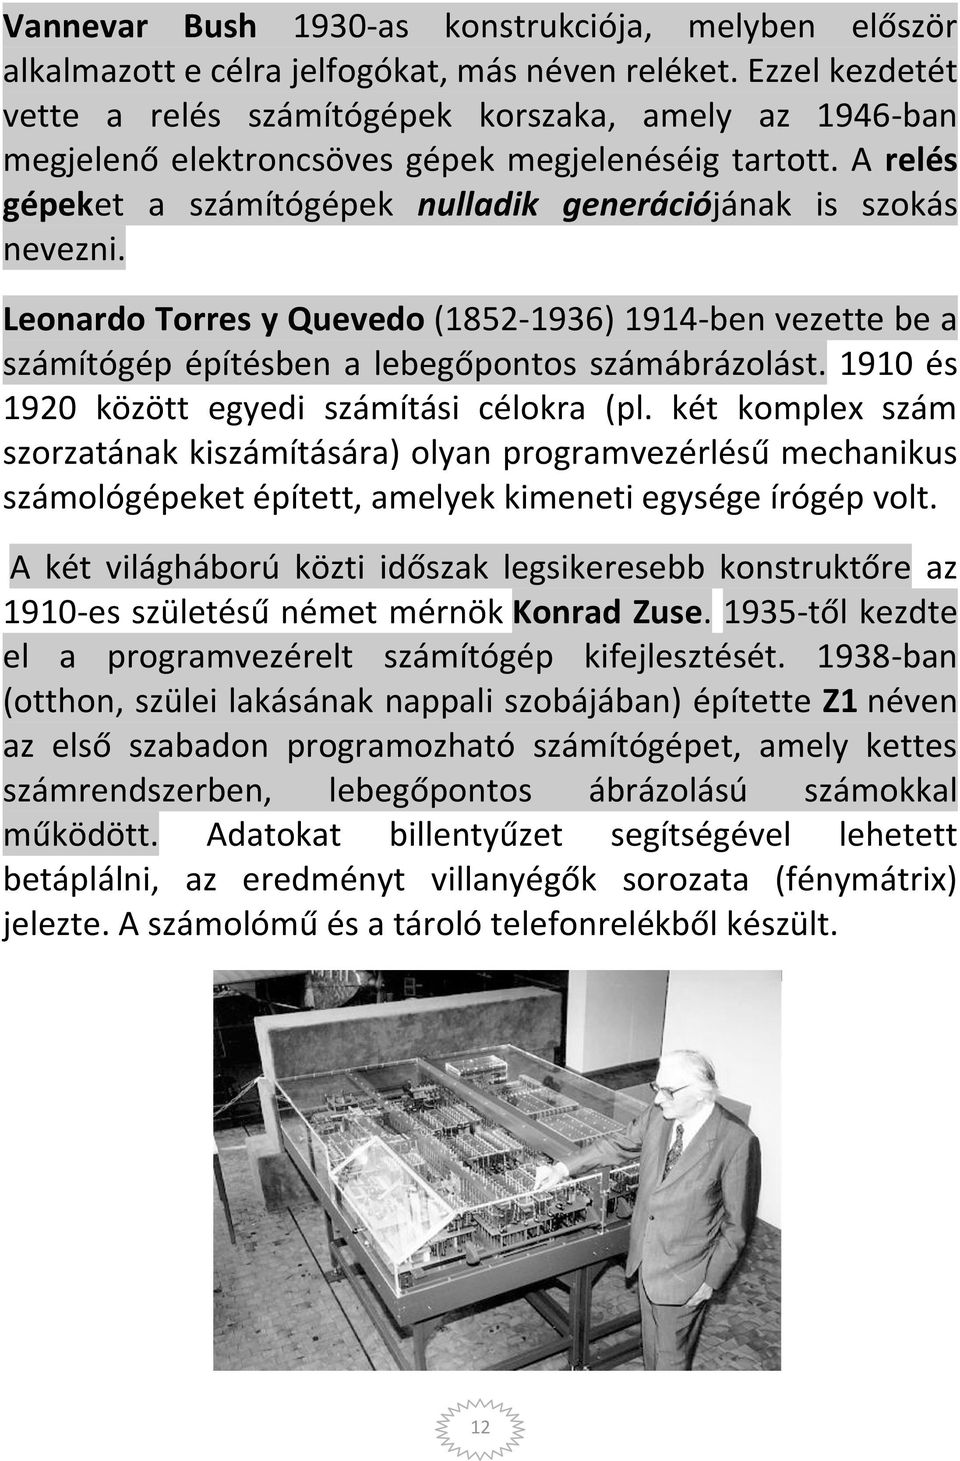 Leonardo Torres y Quevedo (1852-1936) 1914-ben vezette be a számítógép építésben a lebegőpontos számábrázolást. 1910 és 1920 között egyedi számítási célokra (pl.